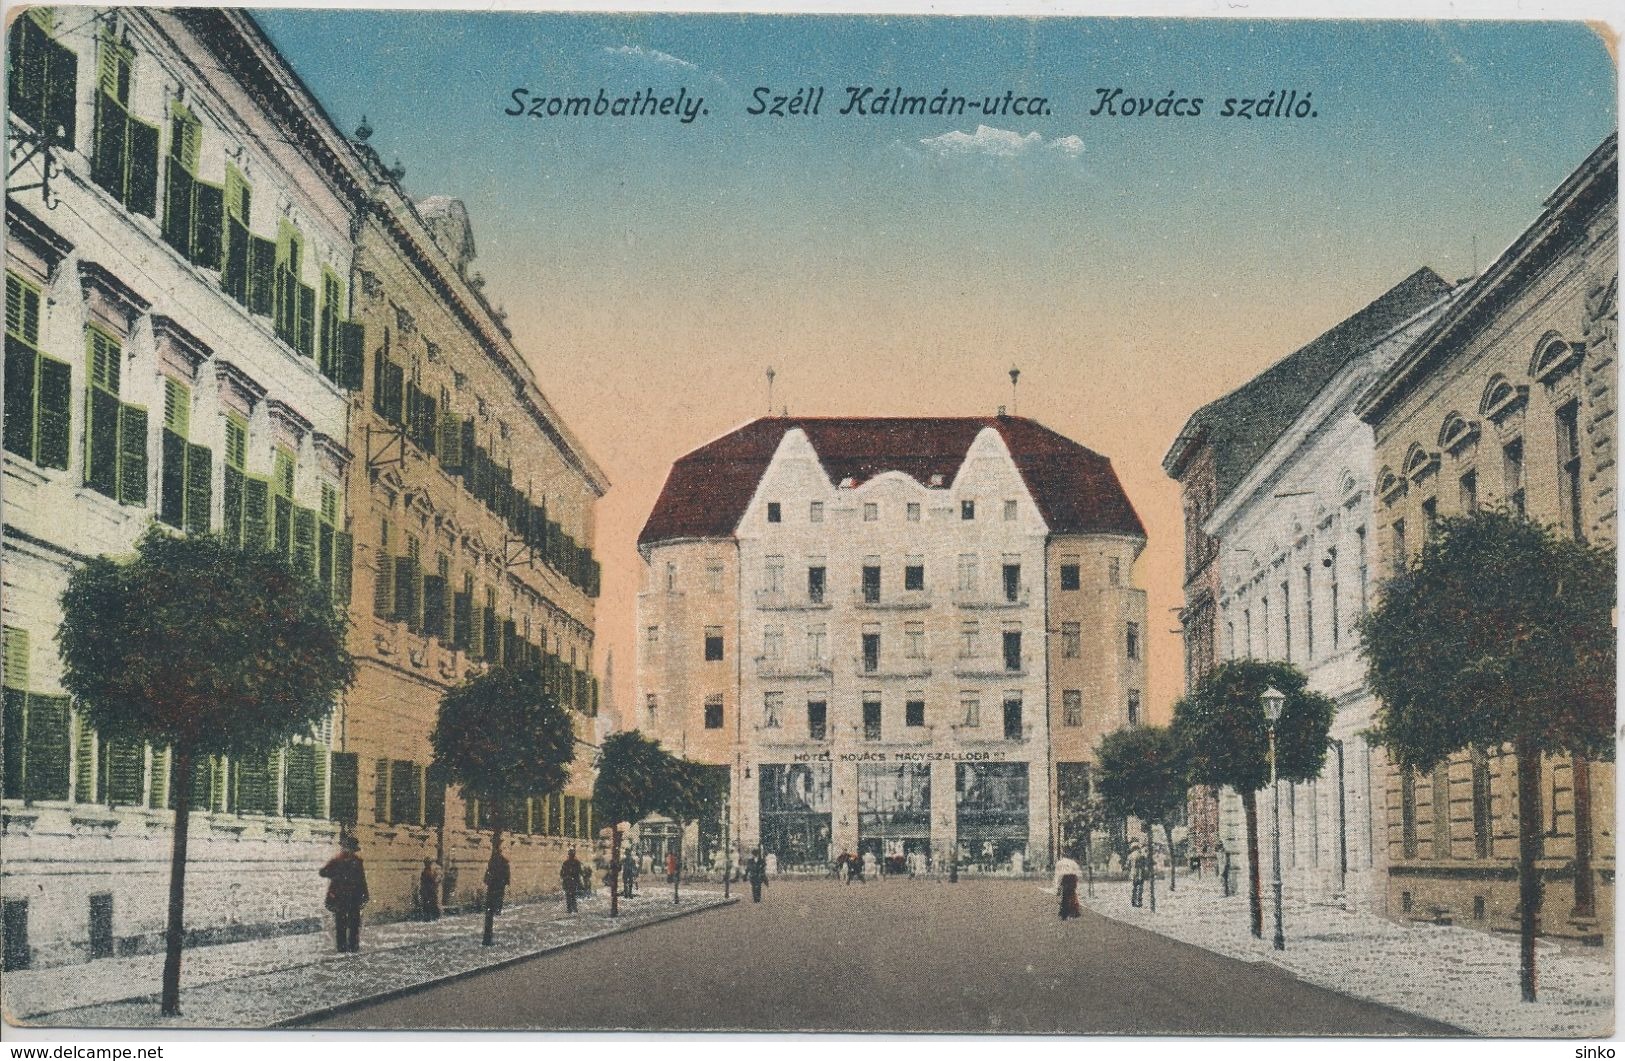 Szombathely. Szell Kalman Street. Kovacs Hotel - Hungary